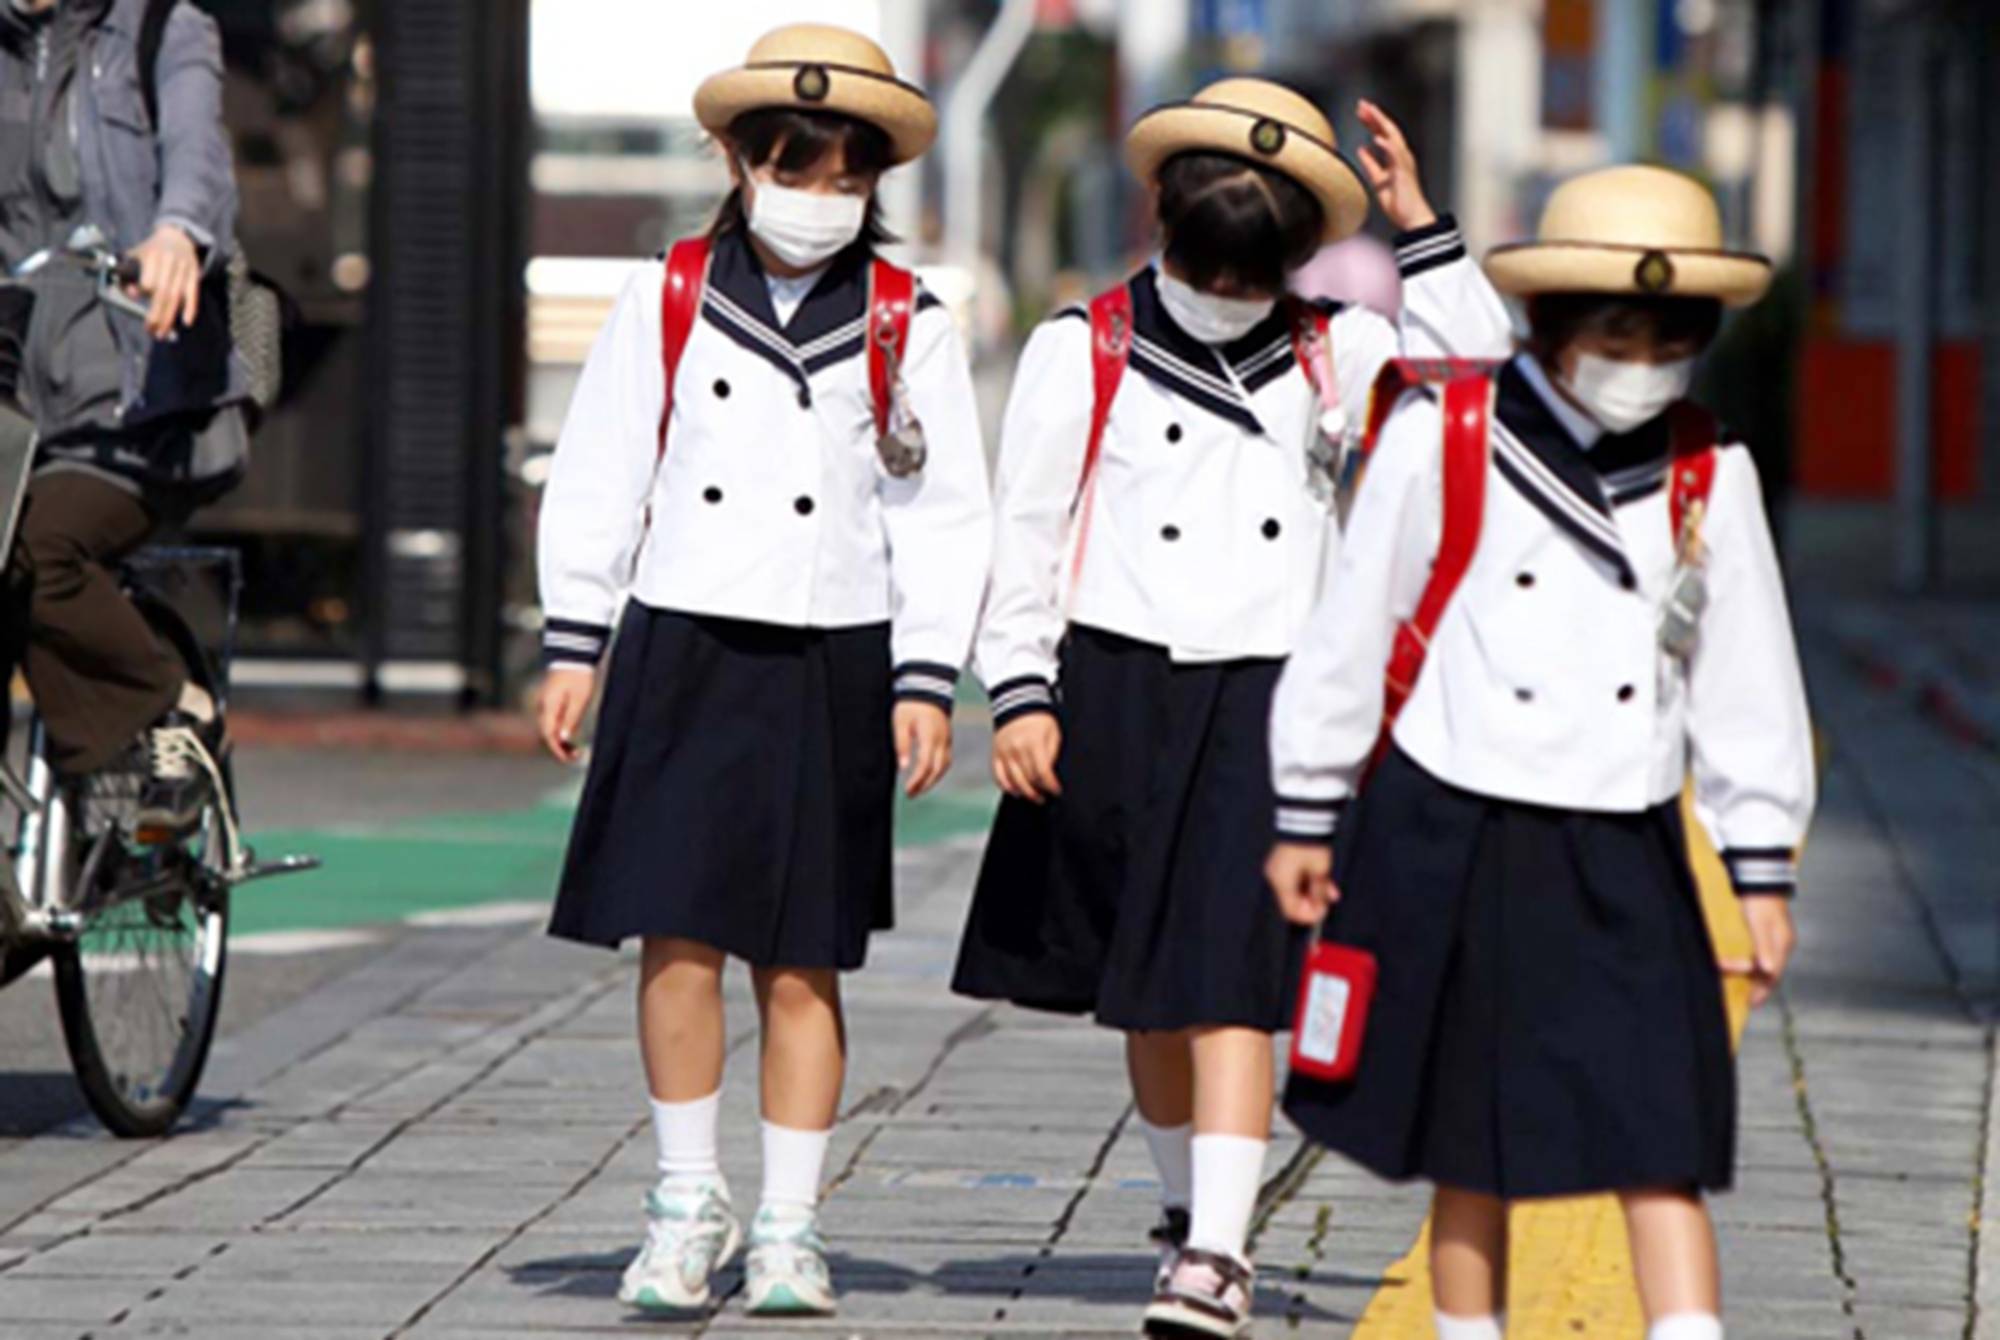 原创日本校服取消性别差异裙子变裤子学生难接受中国网友乐了